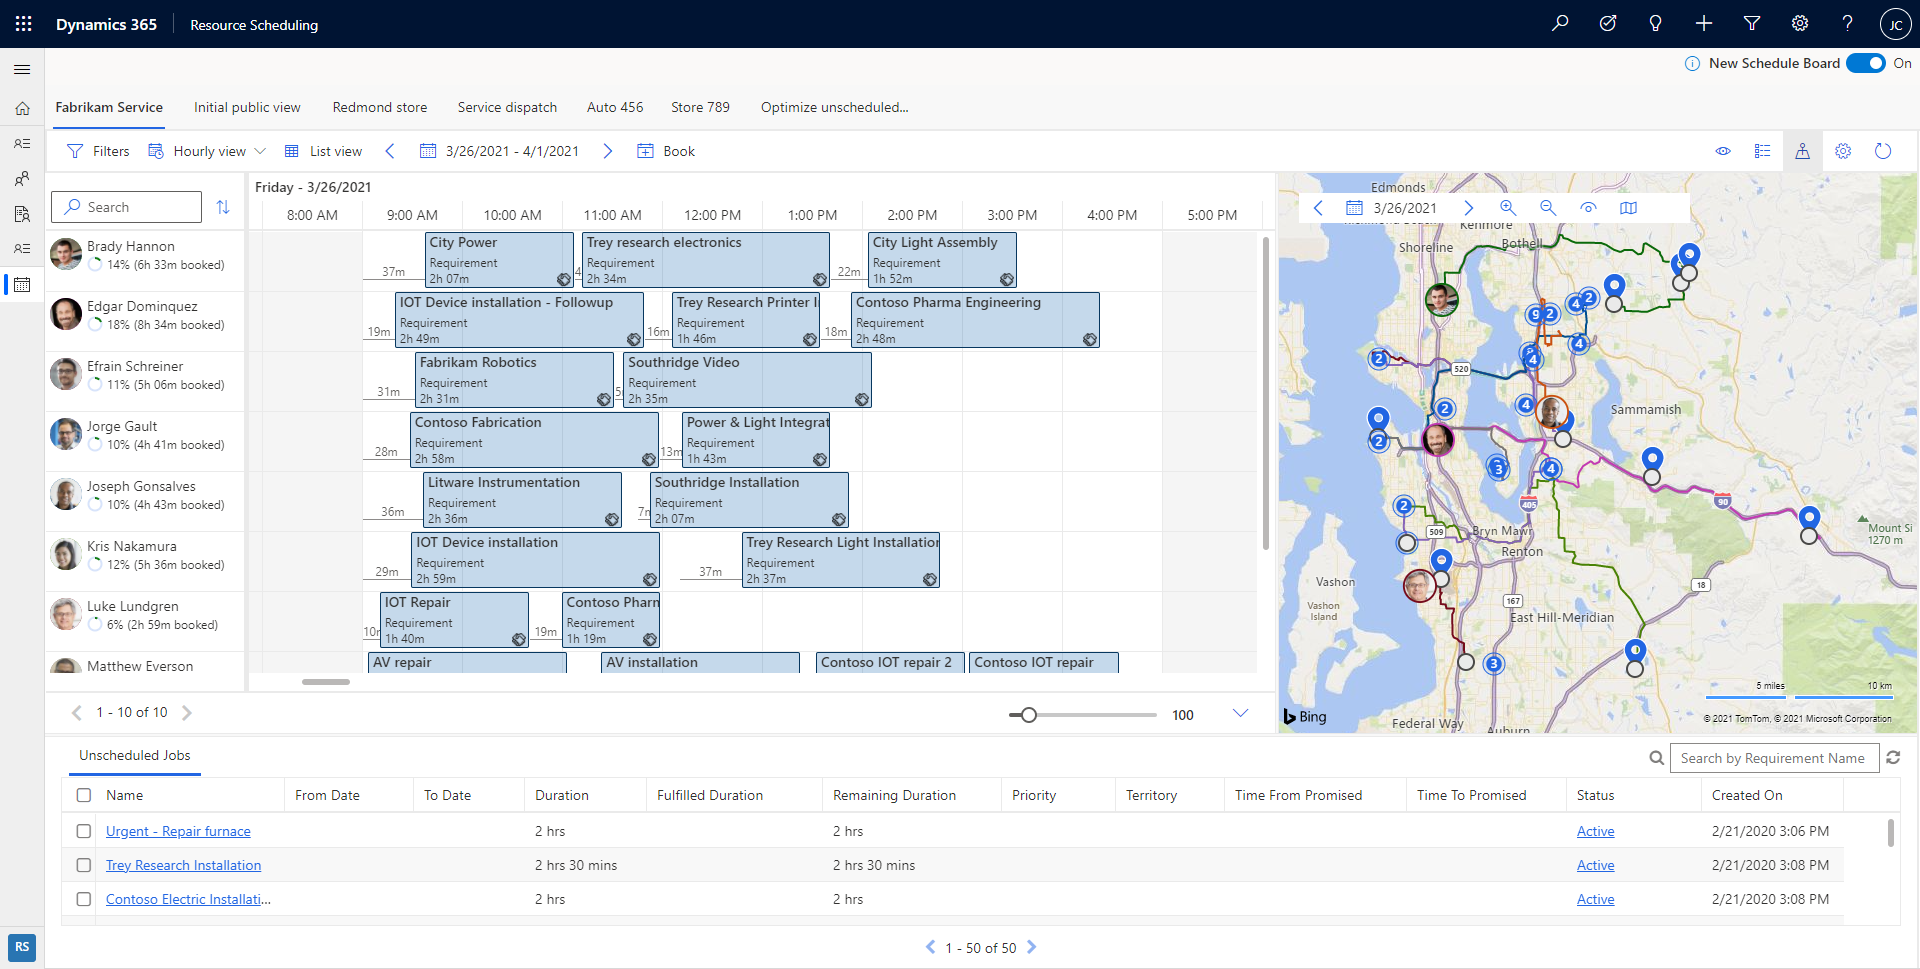 Capture d’écran du nouveau tableau de planification dans Dynamics 365, montrant les ressources et les exigences.